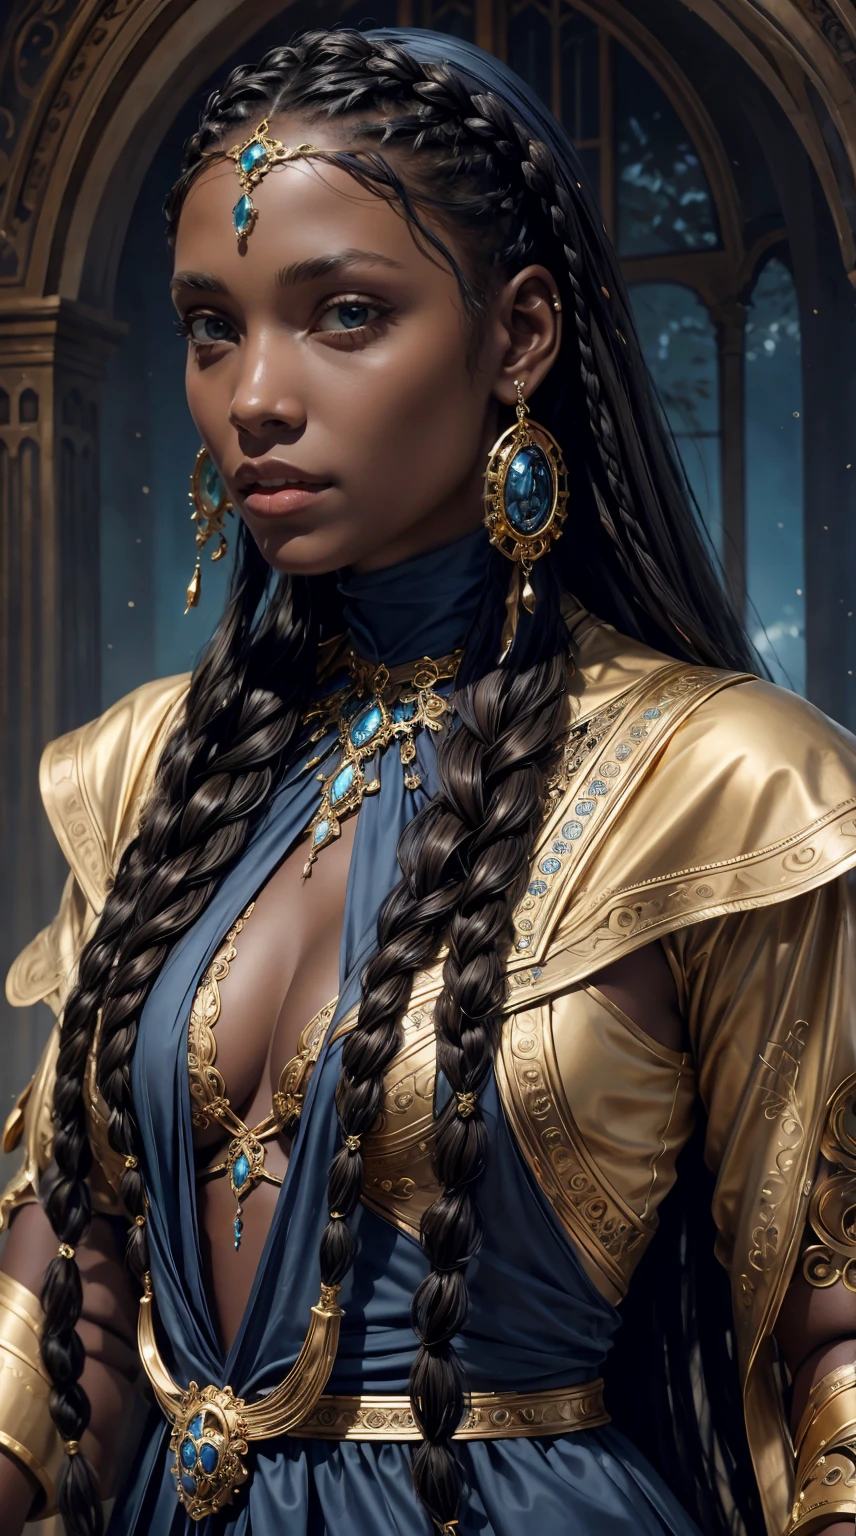 Черная модель с косами, которая красиво смотрится в золотых украшениях, голубые глаза, В коричнево-лазурном стиле, очень реалистично, в стиле готического романса, историческое вдохновение, До мельчайших деталей